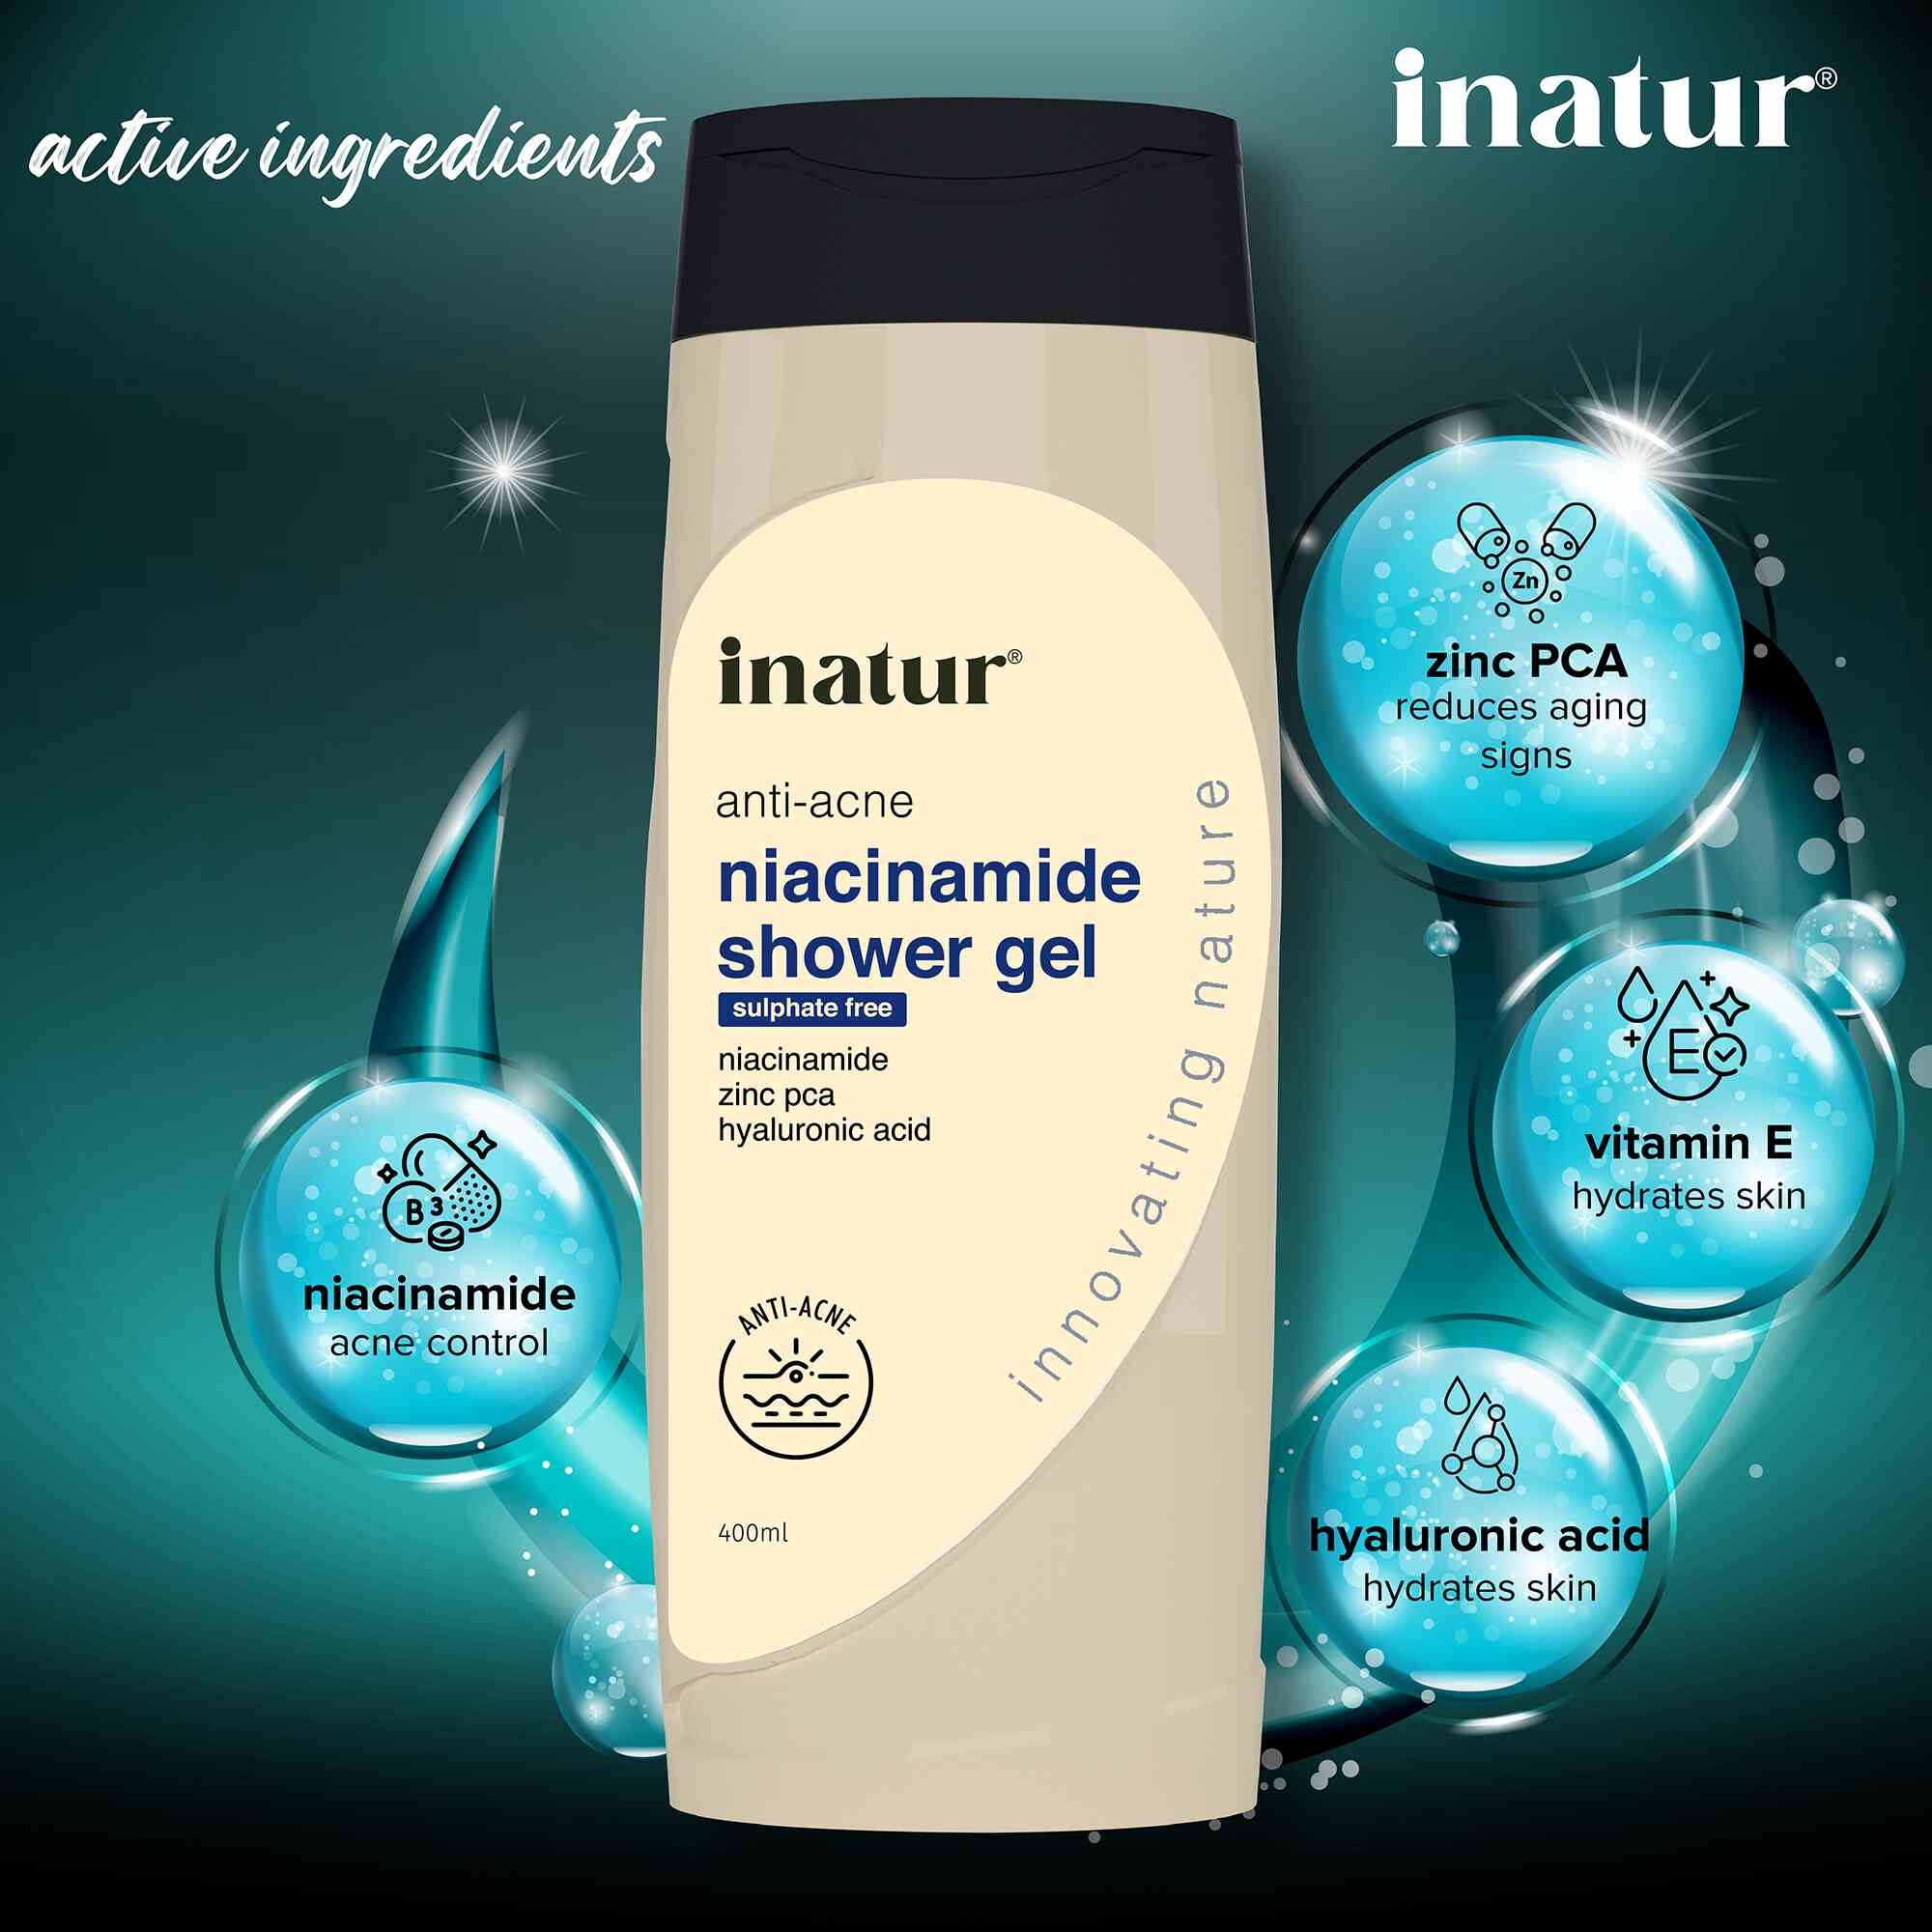 active ingredients of inatur niacinamide shower gel